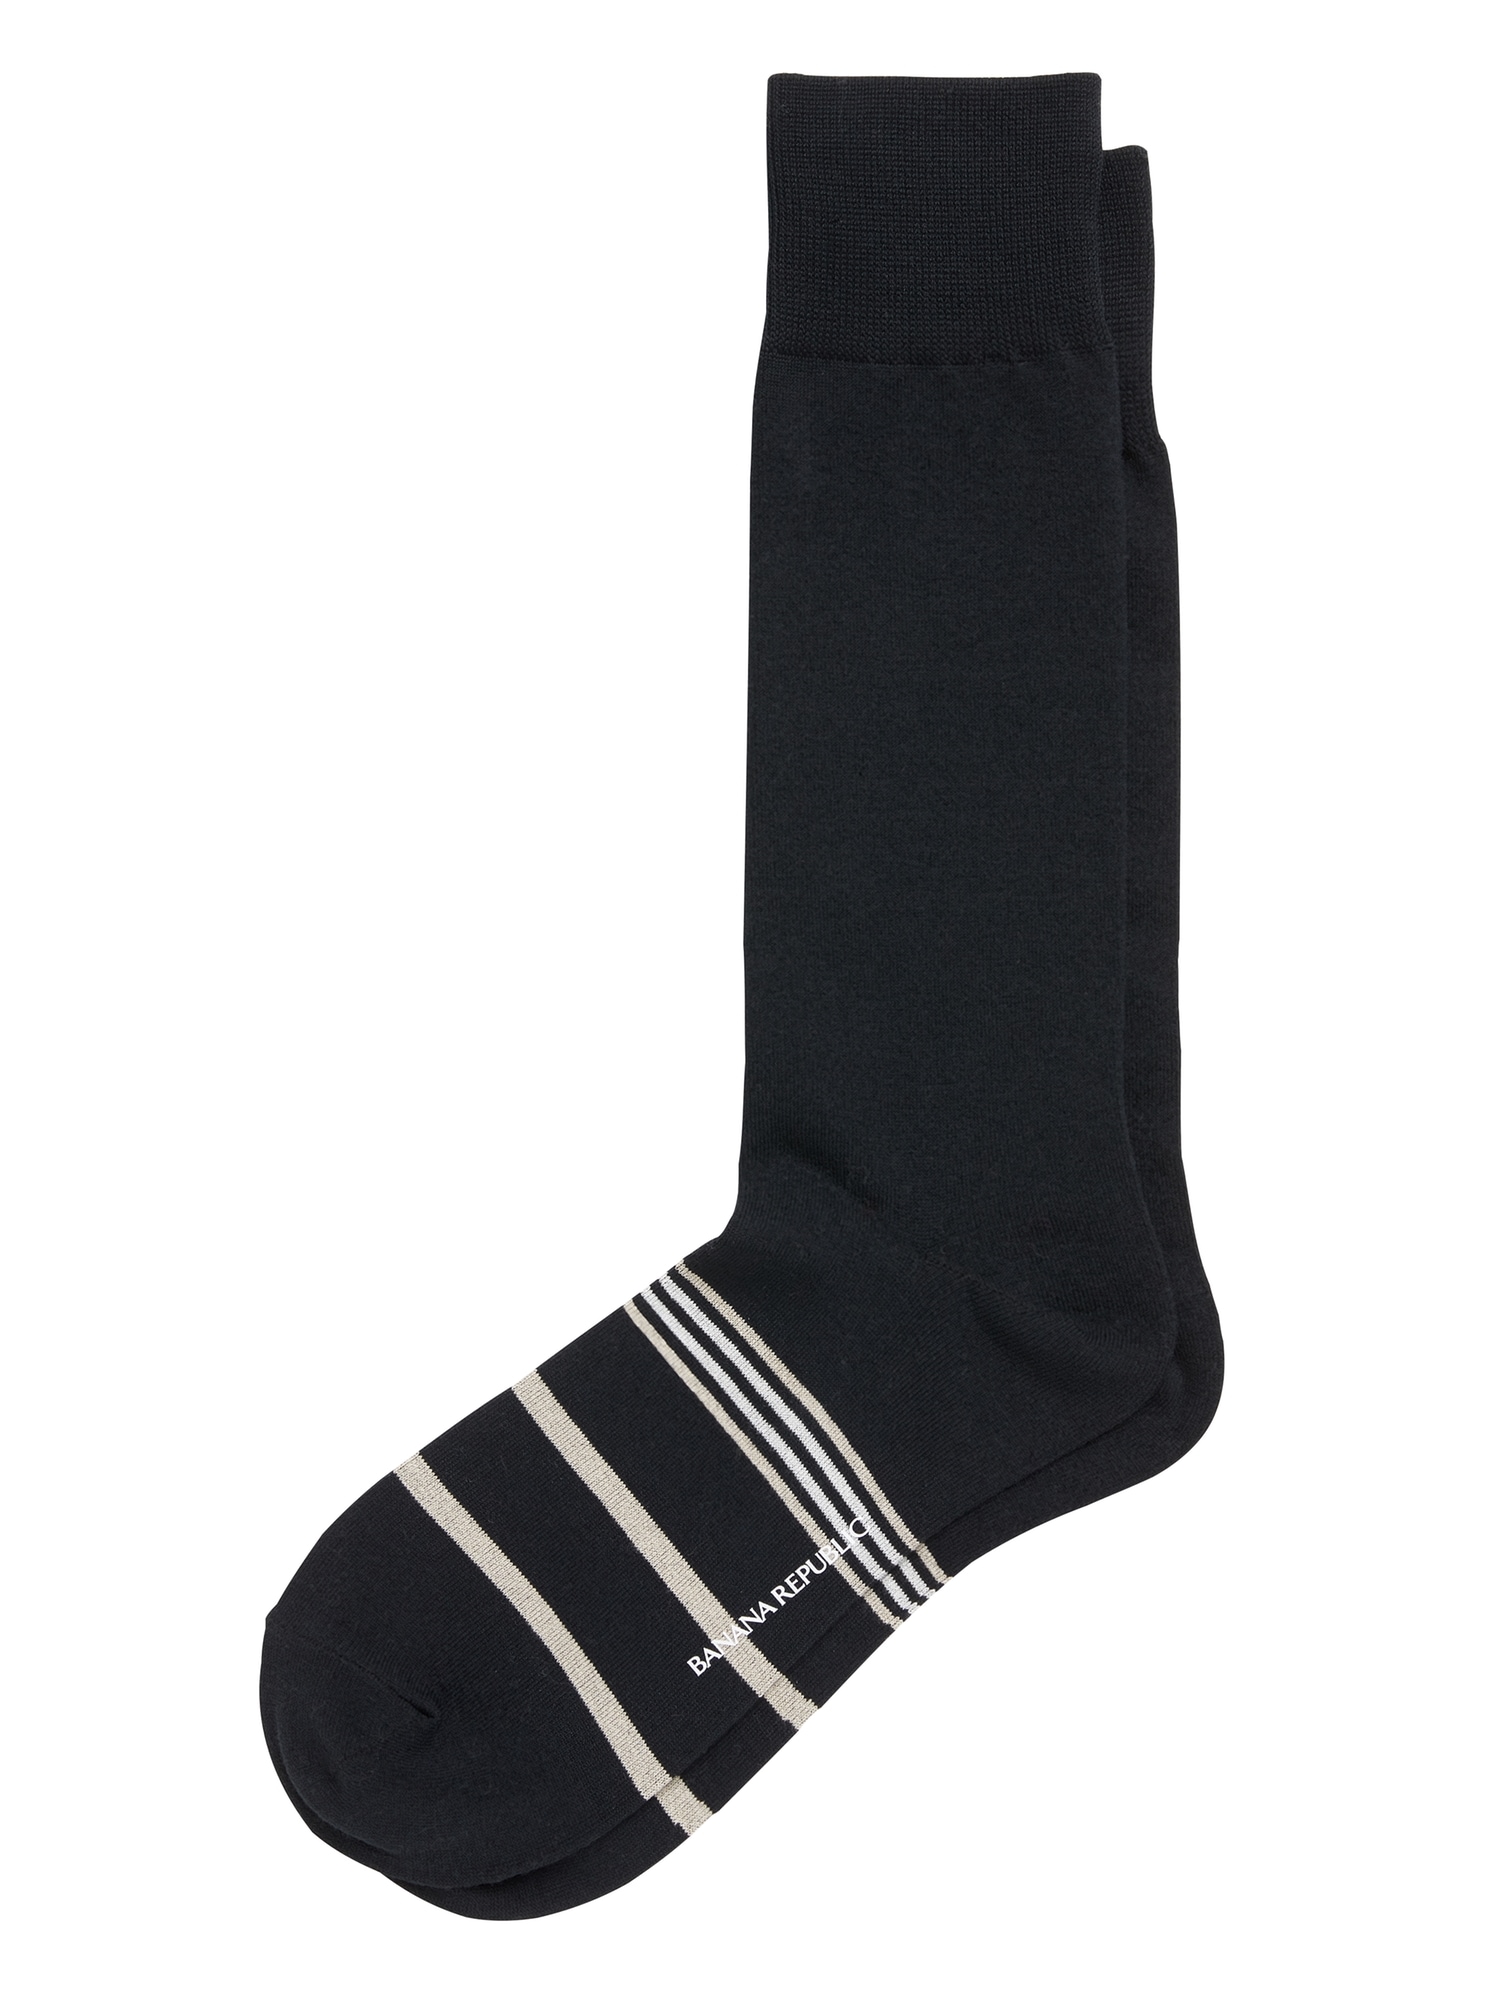 Stripe Tall Boot Socks